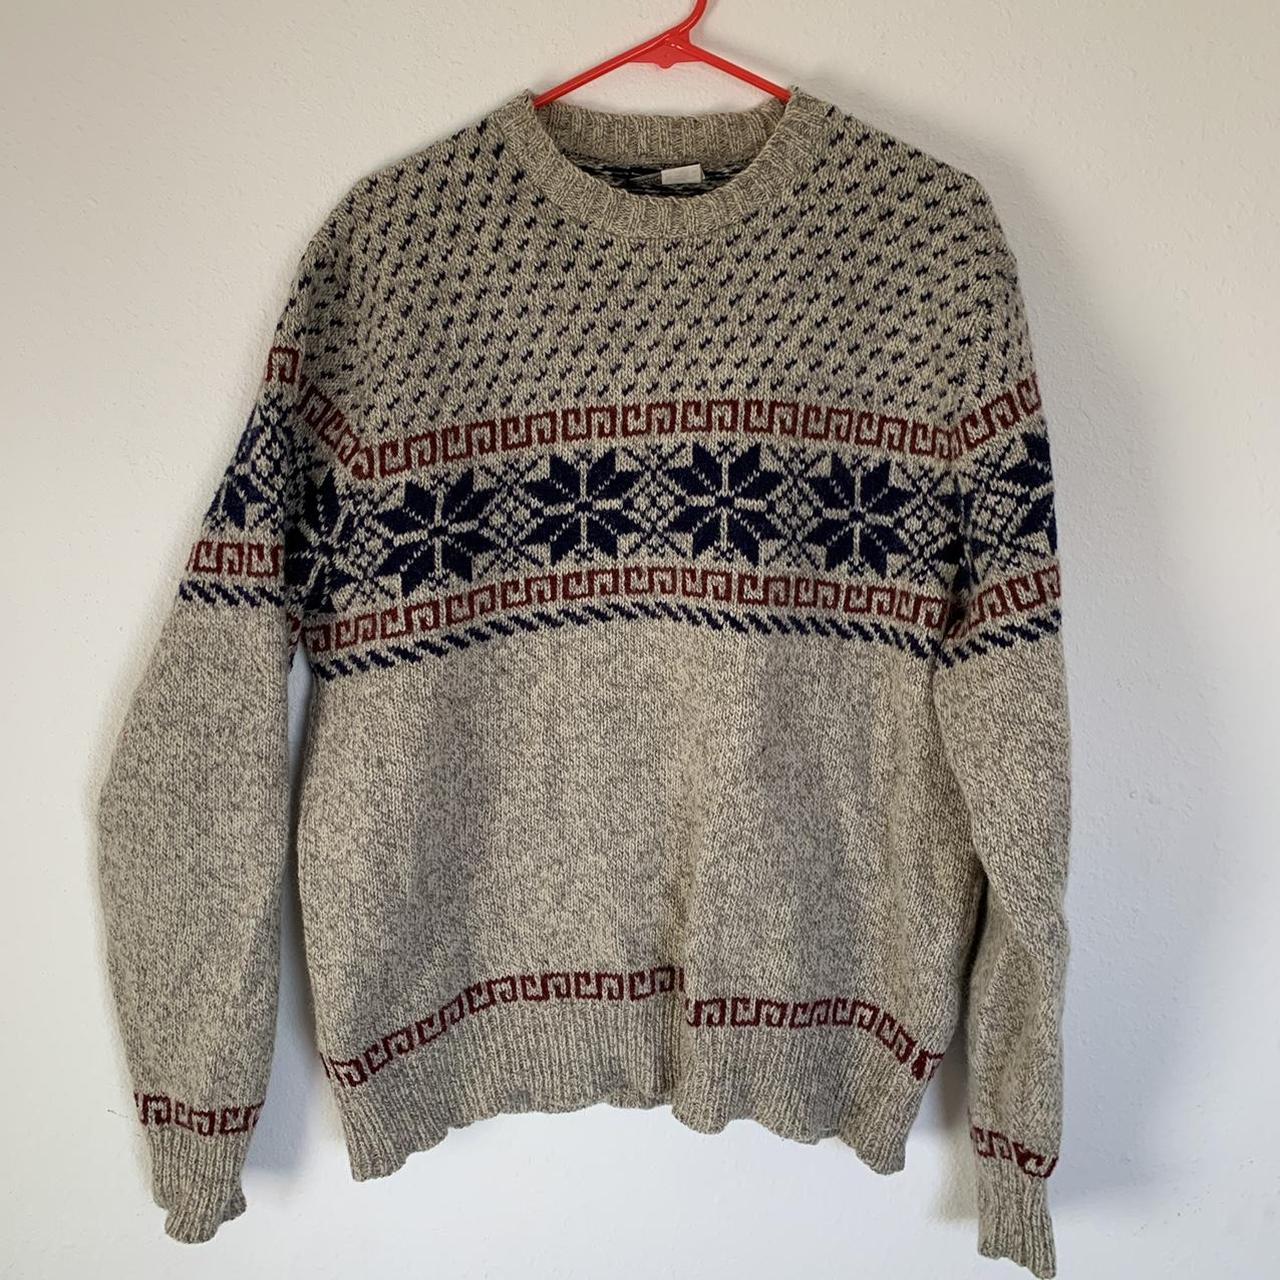 Vintage 90s lands end fair isle wool sweater. This... - Depop